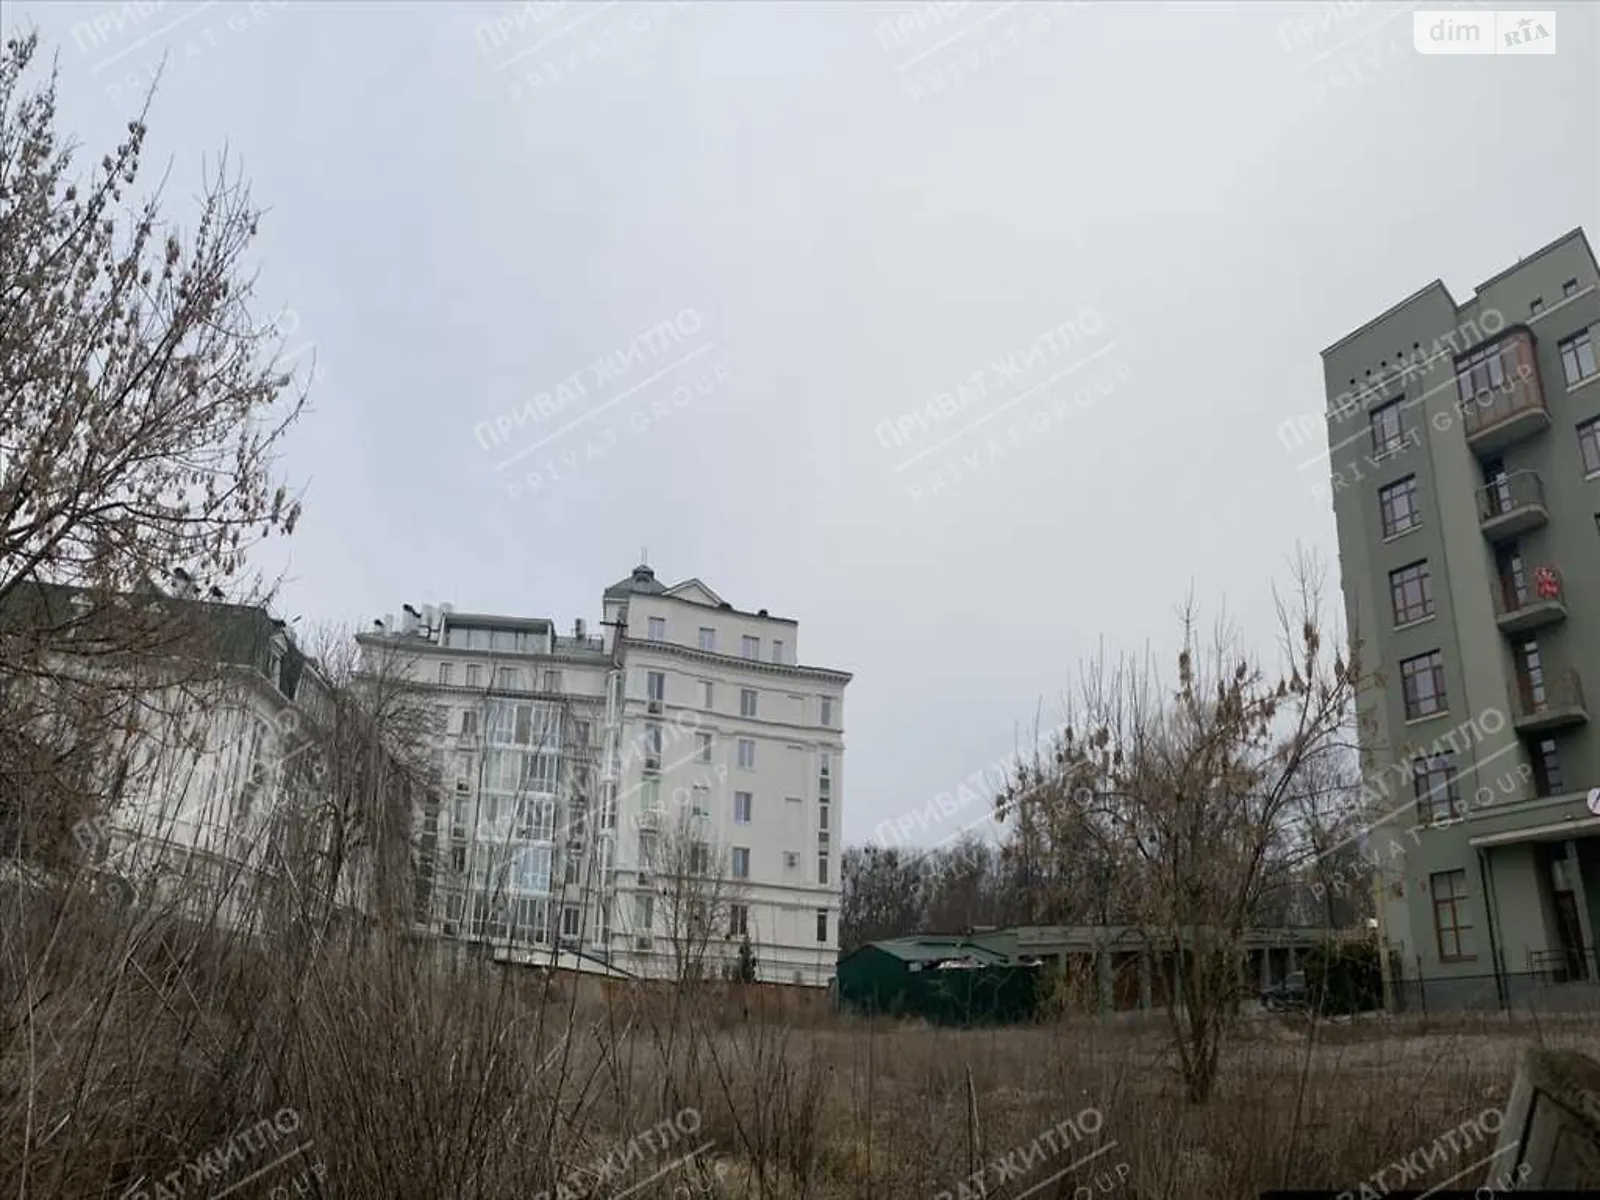 Продается земельный участок 13 соток в Полтавской области - фото 2